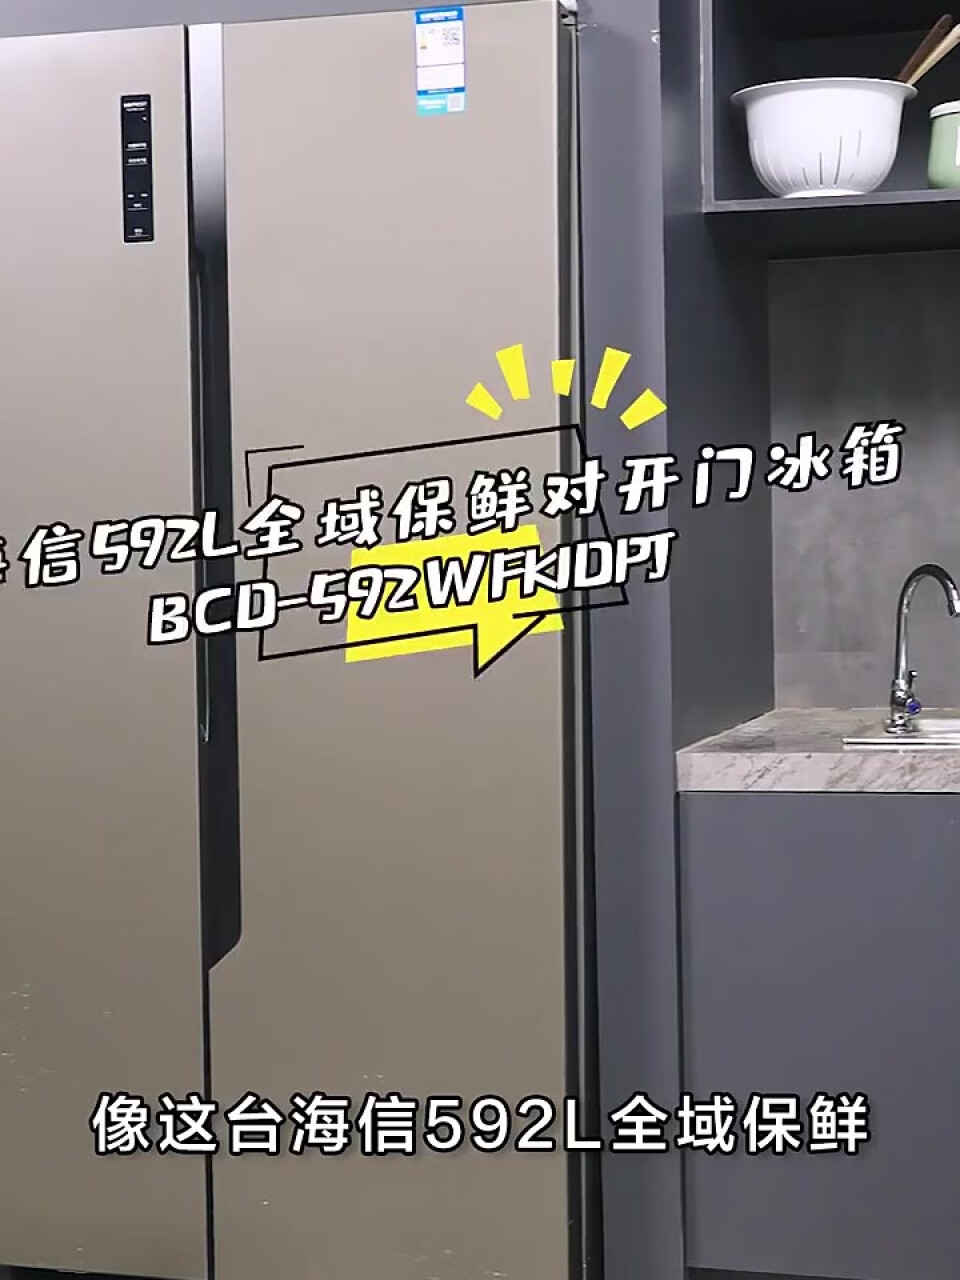 海信(Hisense)冰箱双开门对开门大容量 592升 一级能效风冷无霜变频BCD-592WFK1DPJ鲜域除菌净味(海信集团),第3张